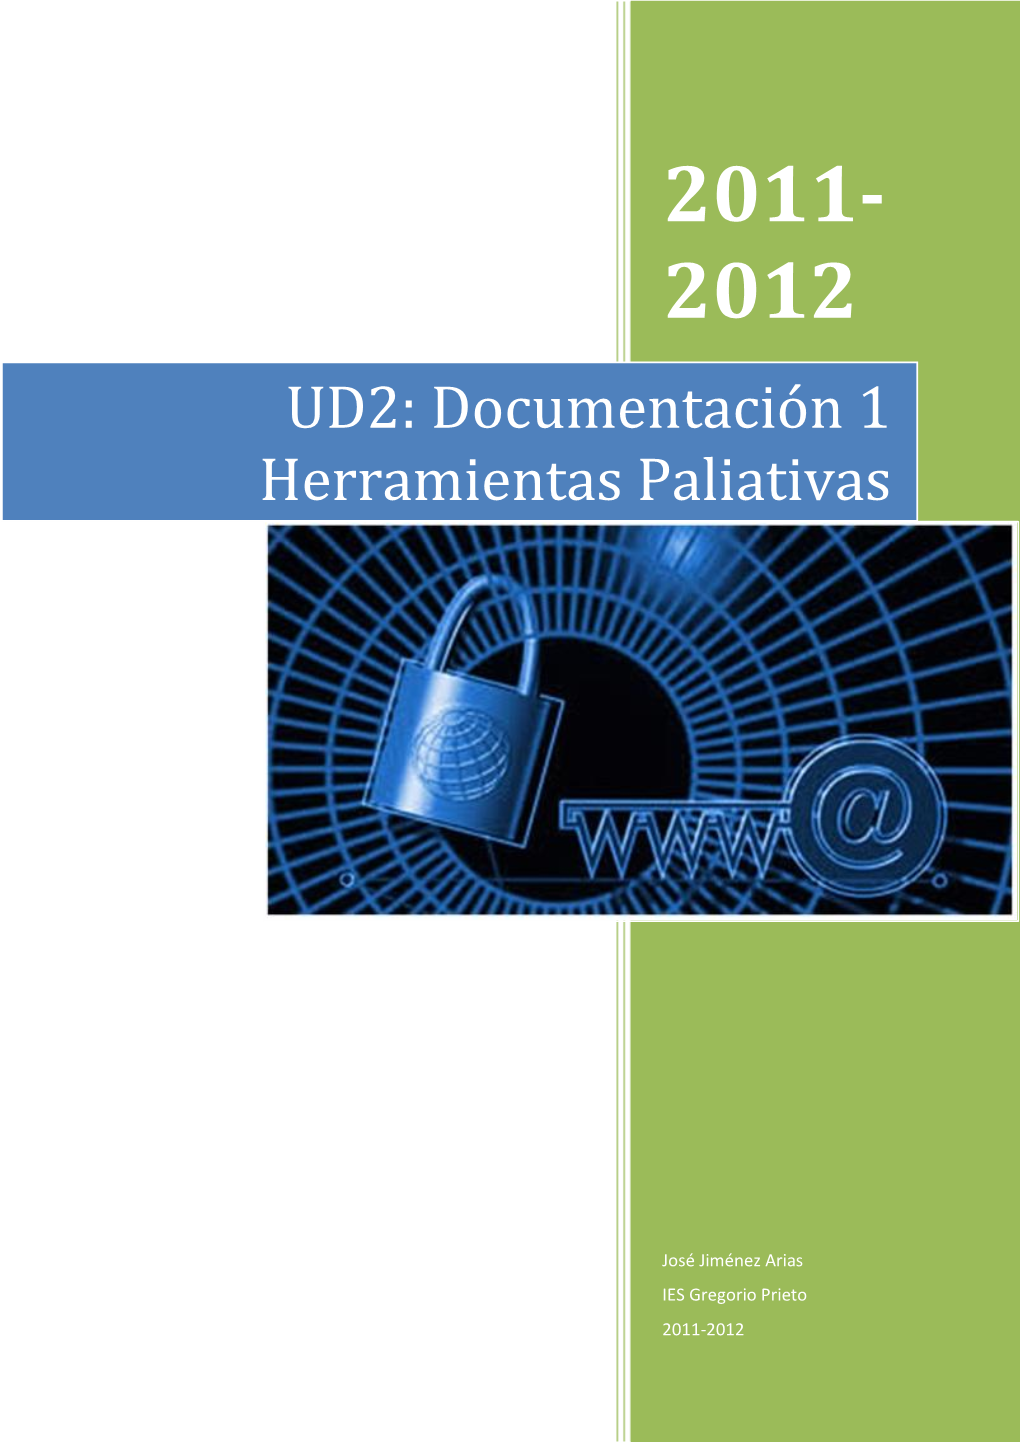 UD2: Documentación 1 Herramientas Paliativas